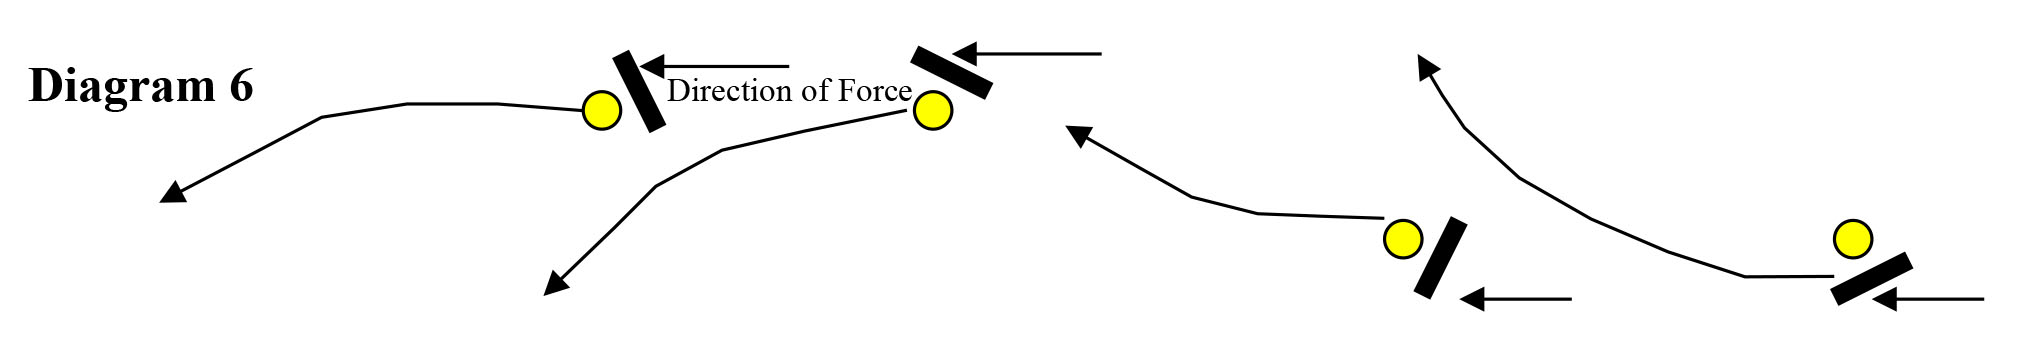 diagram 7